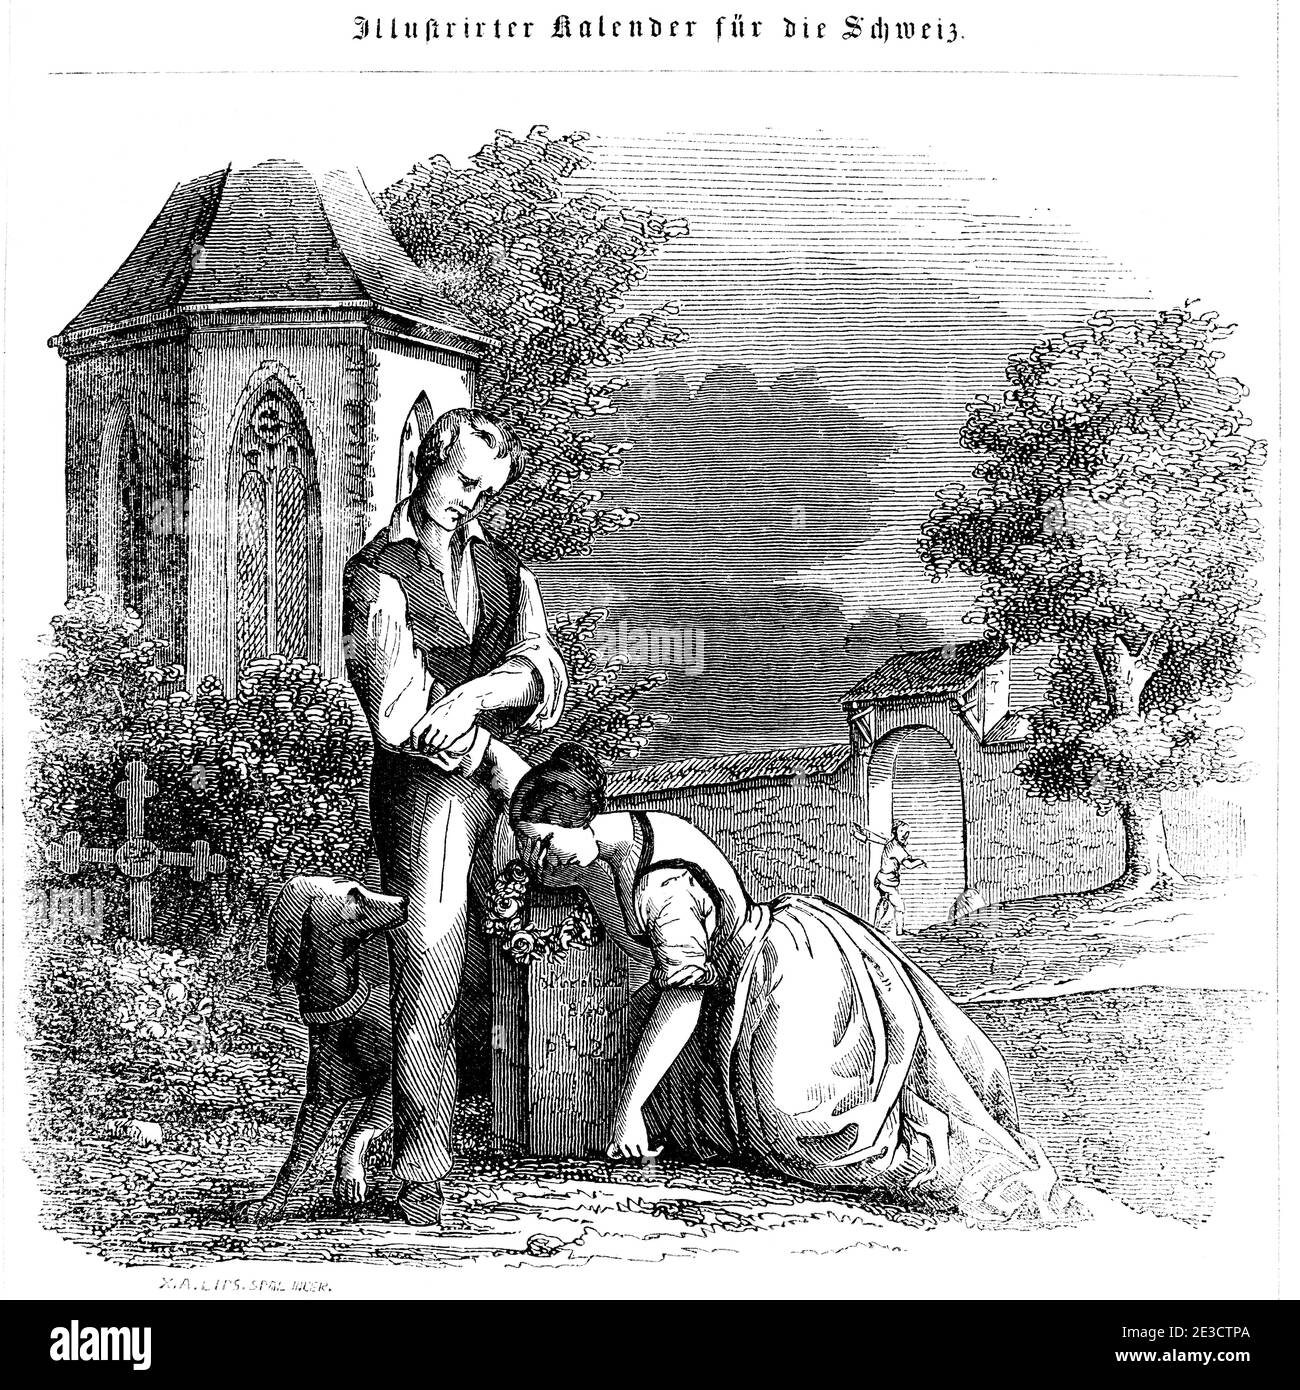 Calendario Suizo con una historia sobre un matrimonio rural y motivos coreesponding, St. Gallen Suiza 1853 Foto de stock